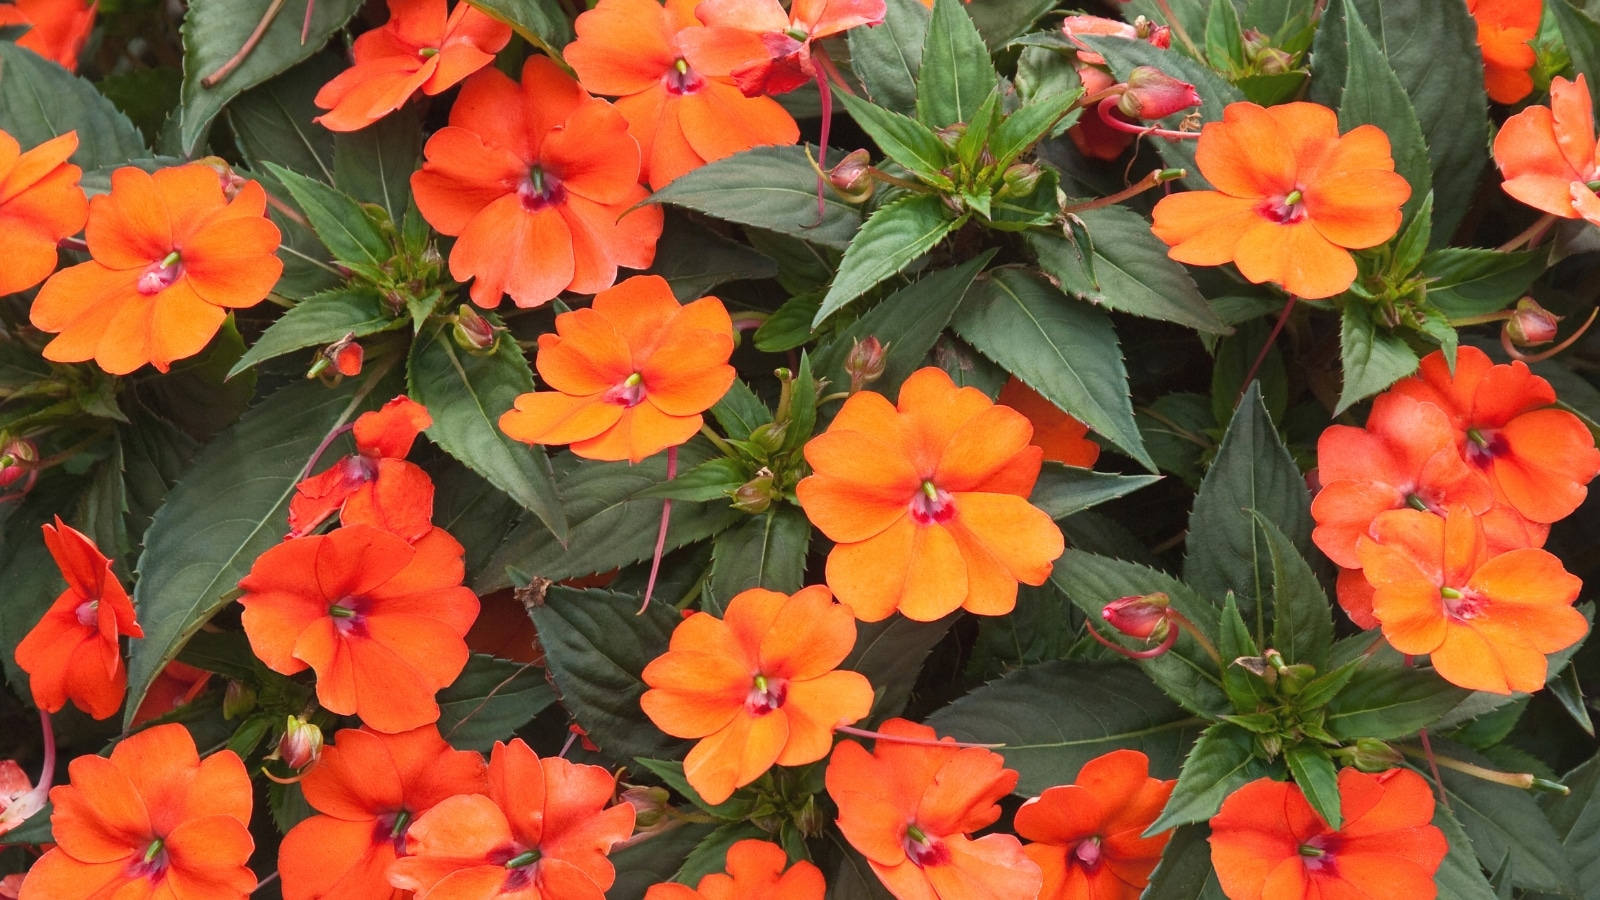 Varias plantas de Impatiens presentan llamativas flores de cinco pétalos que son de color rojo anaranjado.  Las hojas son de forma ovalada con bordes dentados y extremos puntiagudos y tienen un color verde oscuro.